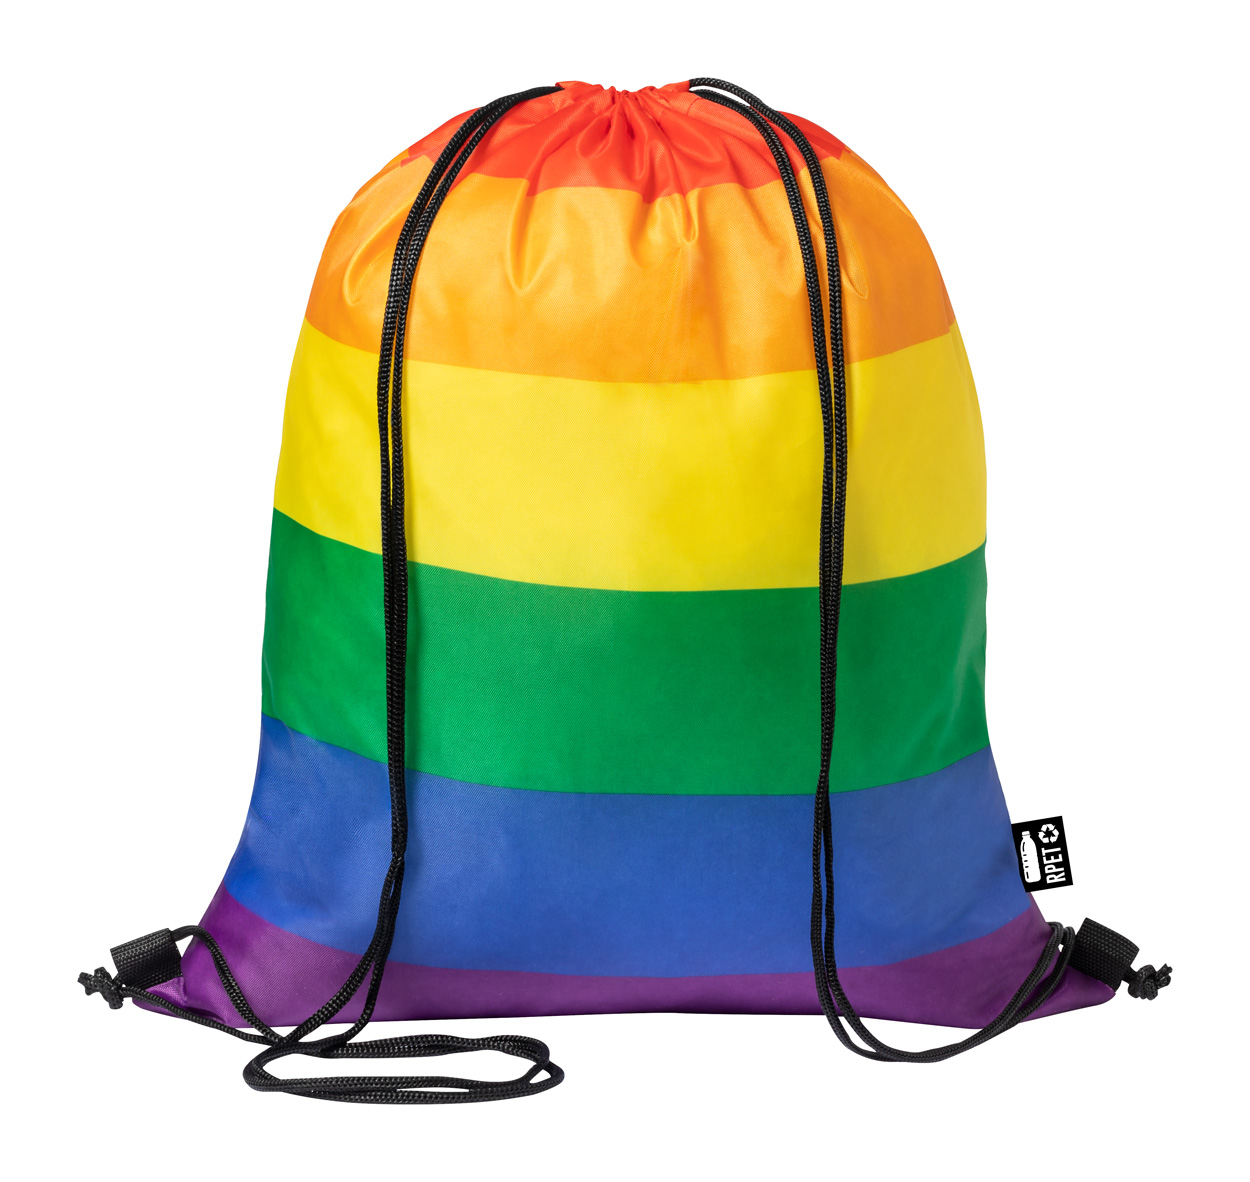 Marsha RPET bag has a download - multicolor